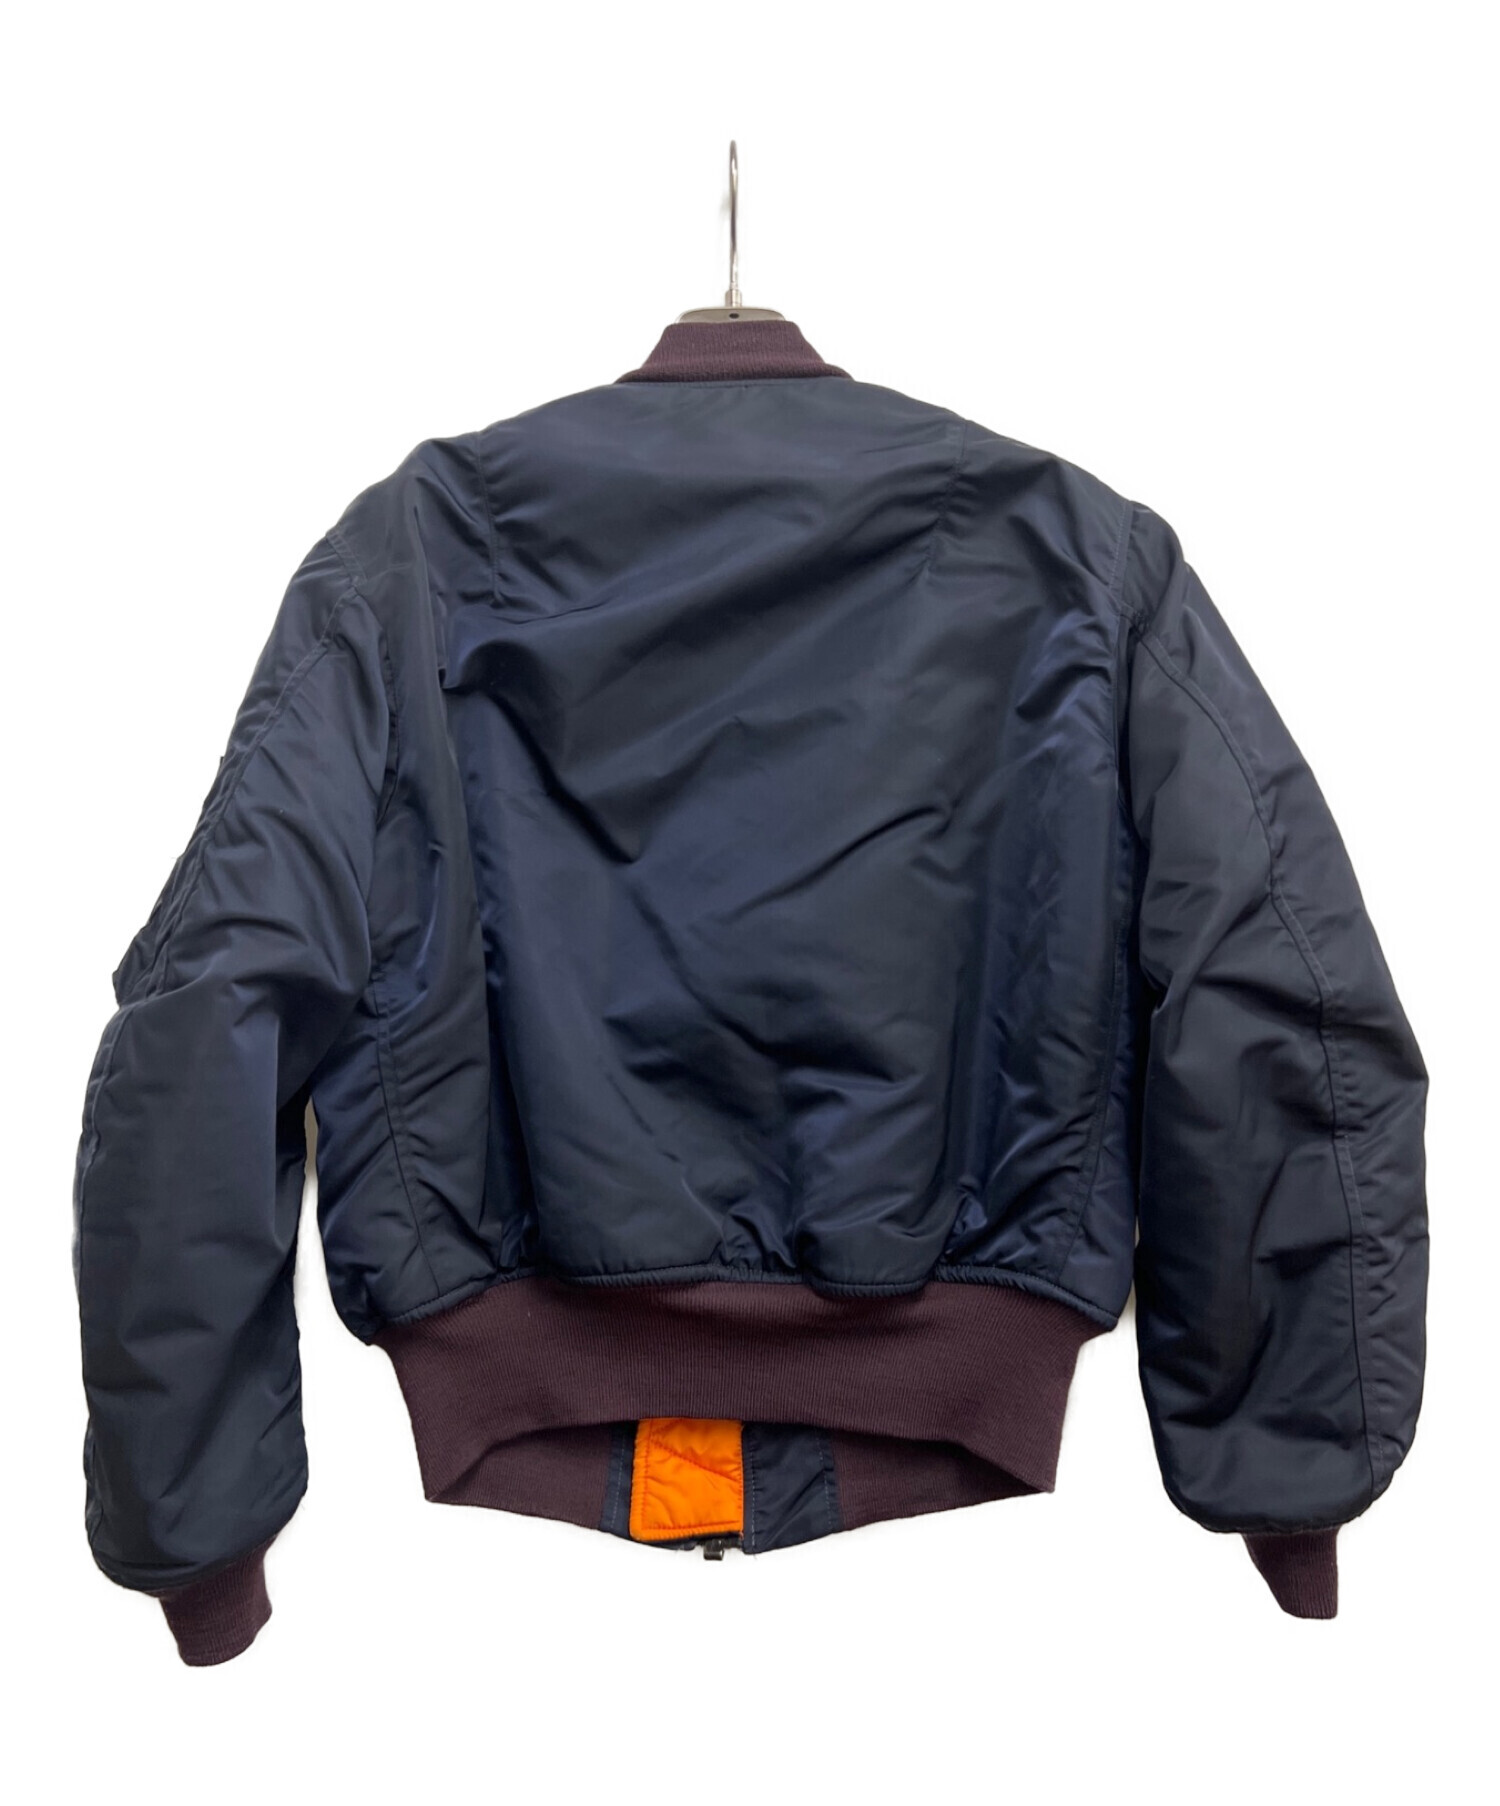 ALPHA INDUSTRIES (アルファインダストリーズ) フライトジャケット ネイビー/オレンジ サイズ:SIZE M